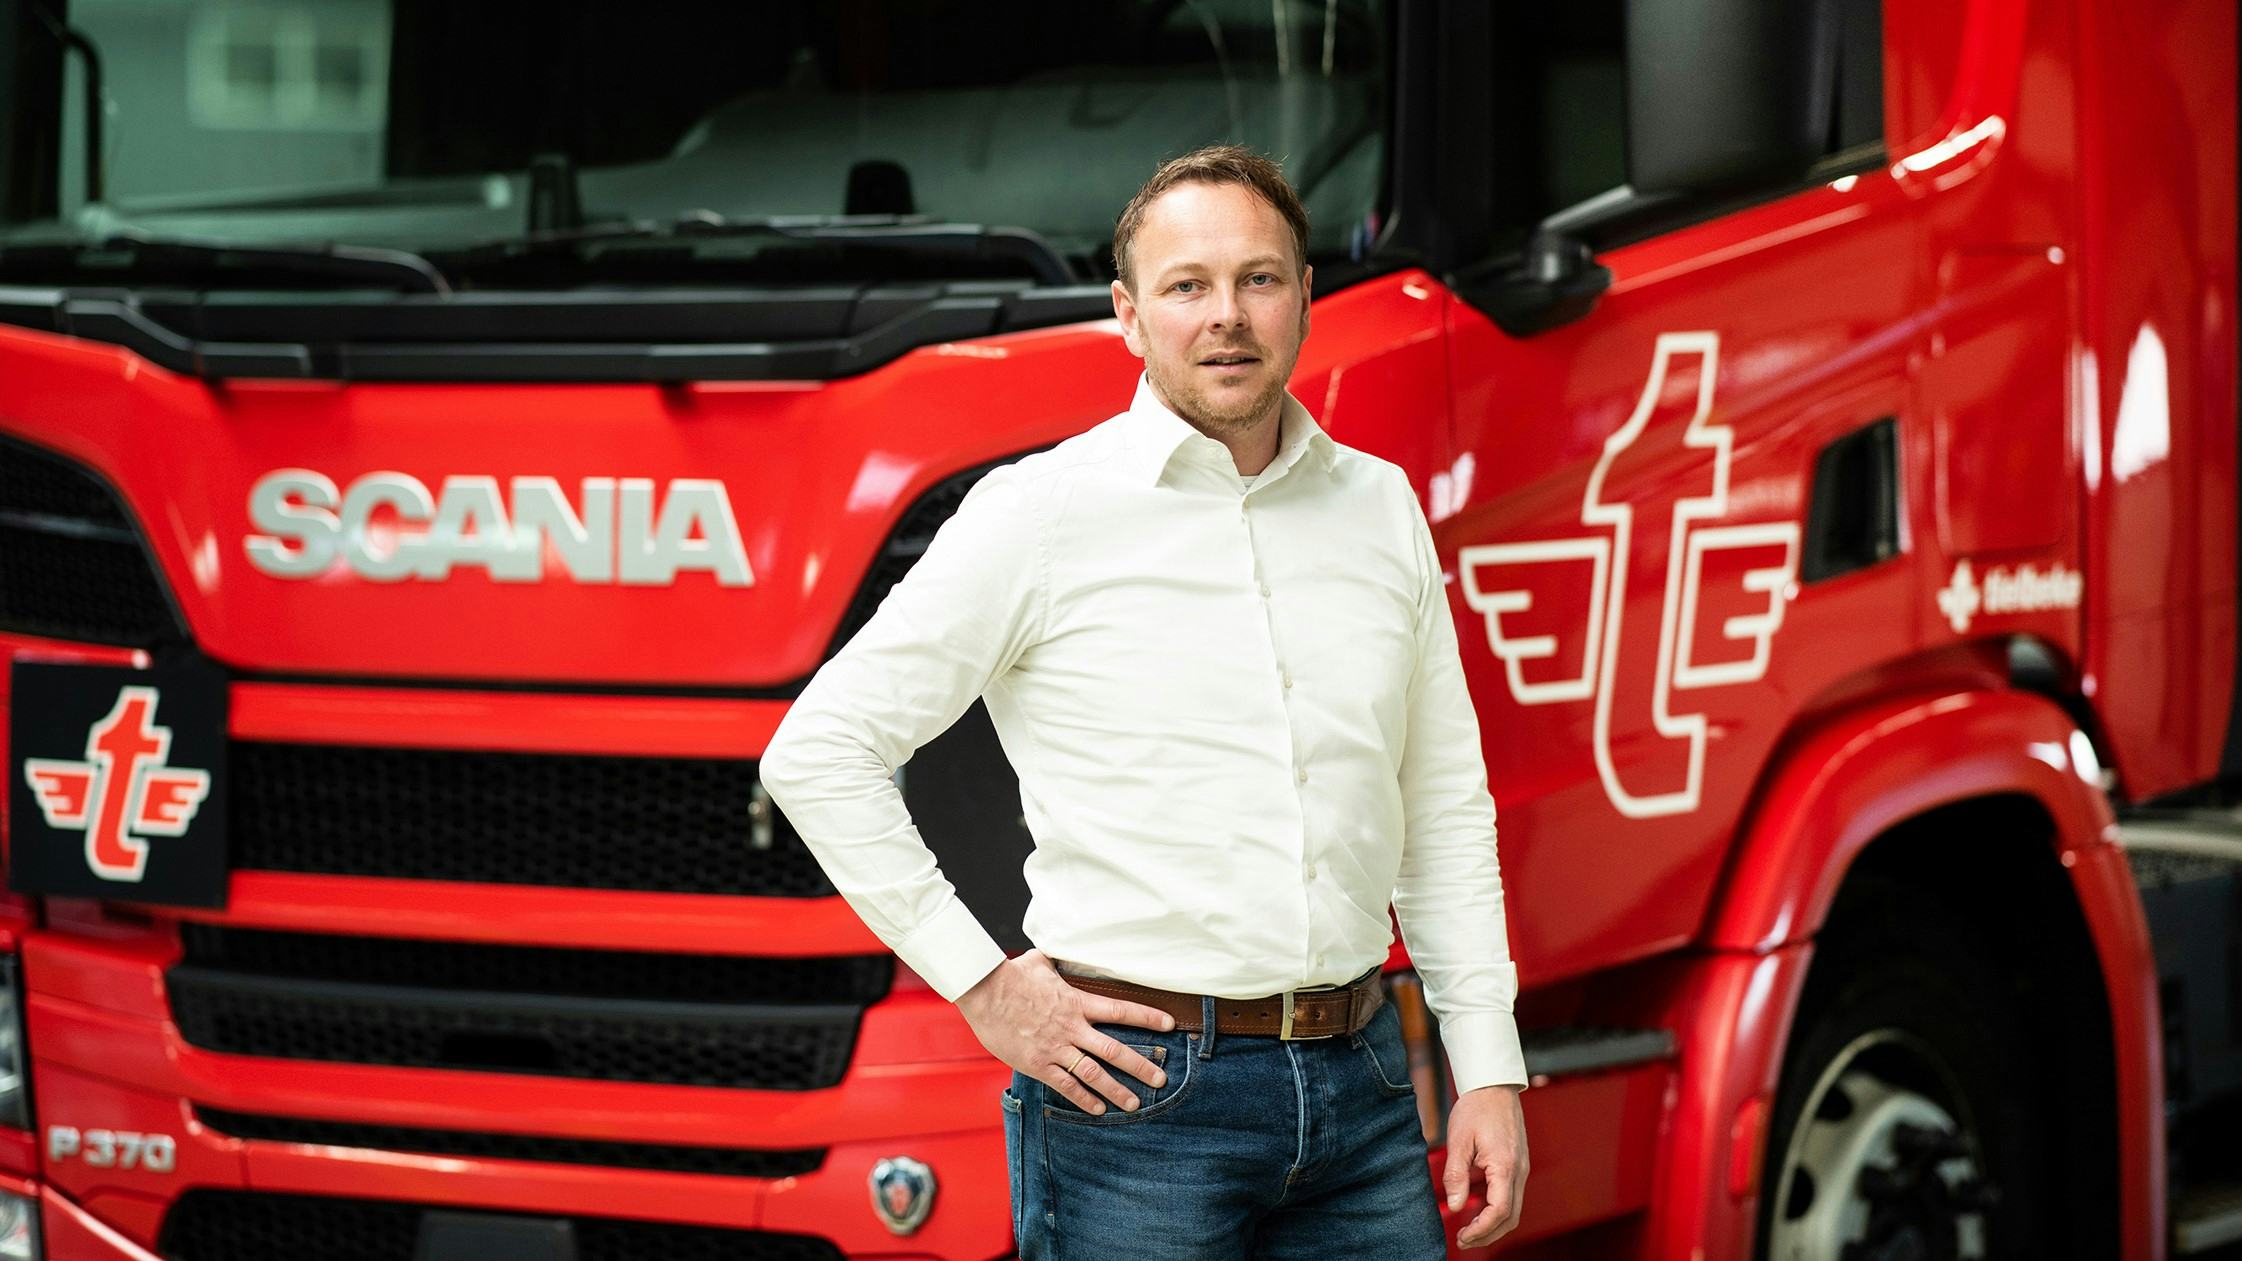 Tielbeke vergroent verder met zestien hybride Scania's